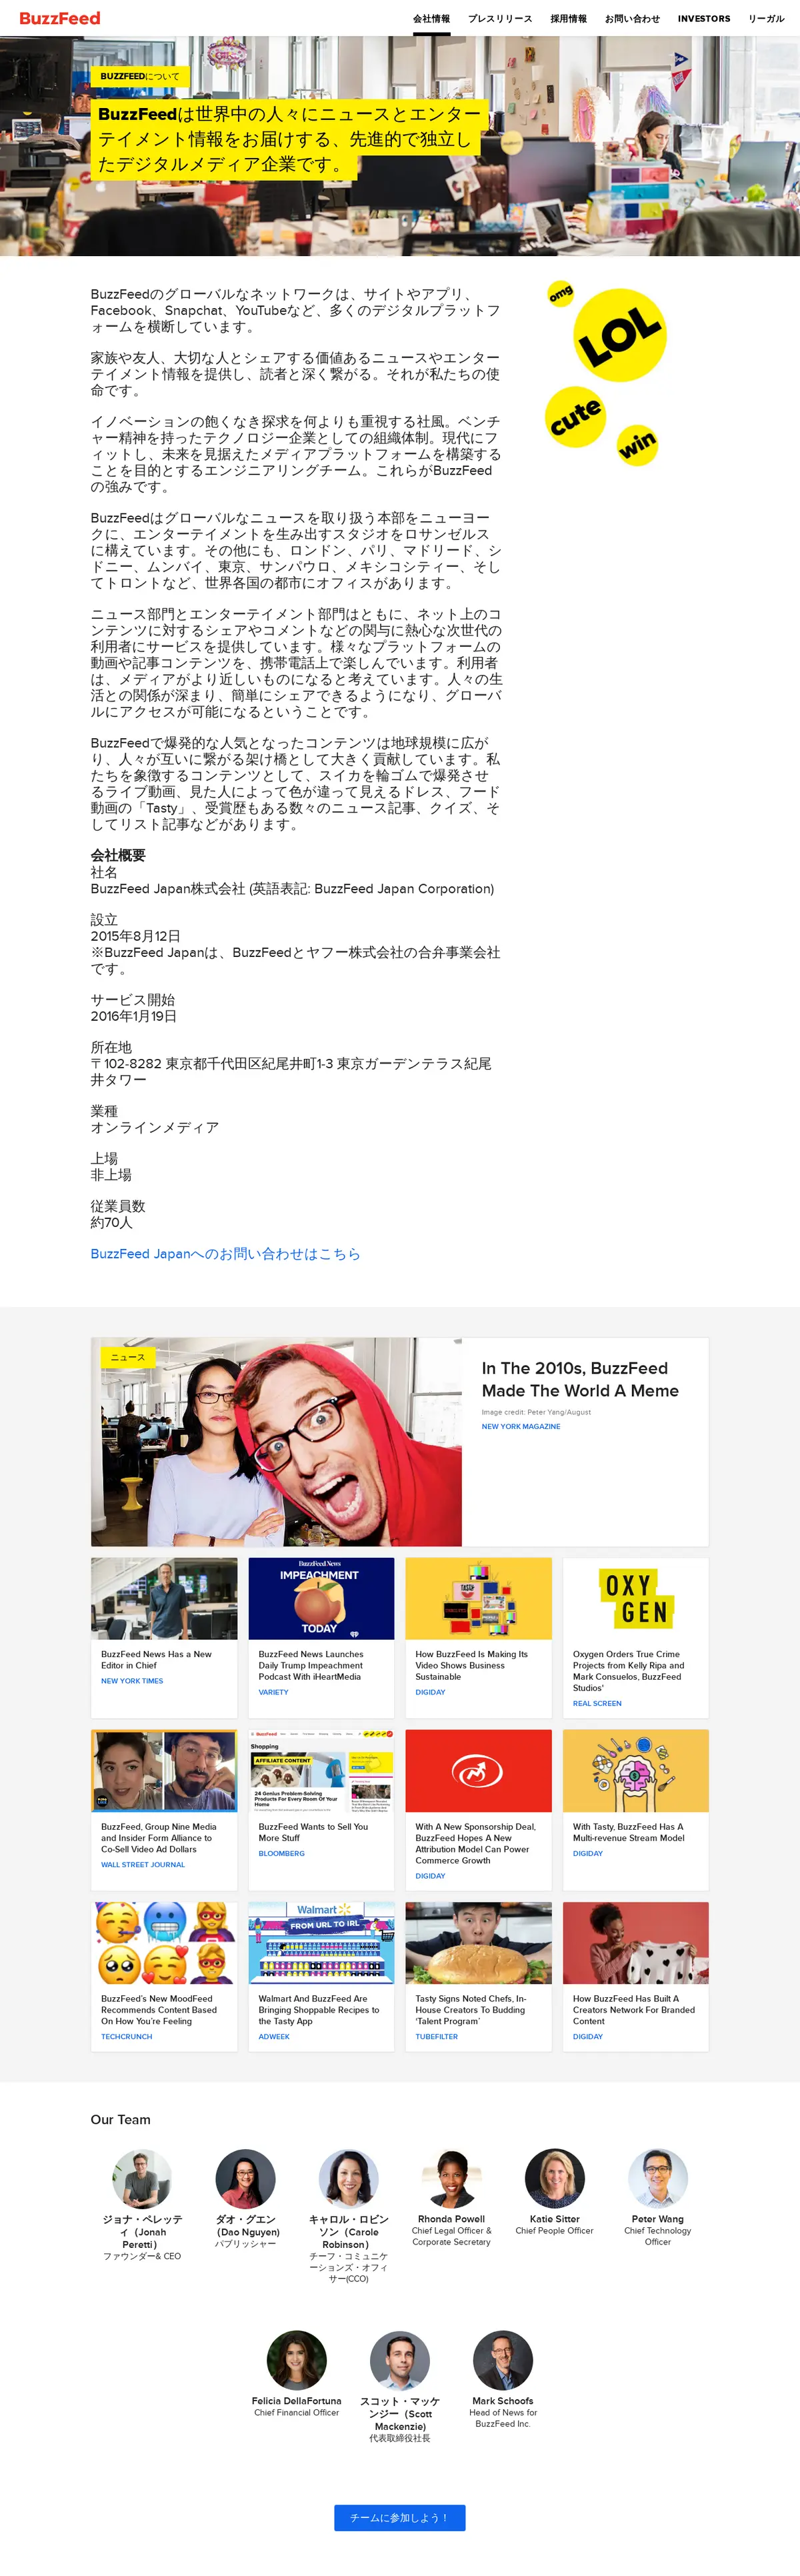 キャプチャ画面 会社名:BuzzFeed Japan株式会社プロジェクト名:BuzzFeed Japan株式会社 画面名:全国トップ デバイス名:PCカテゴリ:広告・クリエイティブタグ:全国トップ,PC